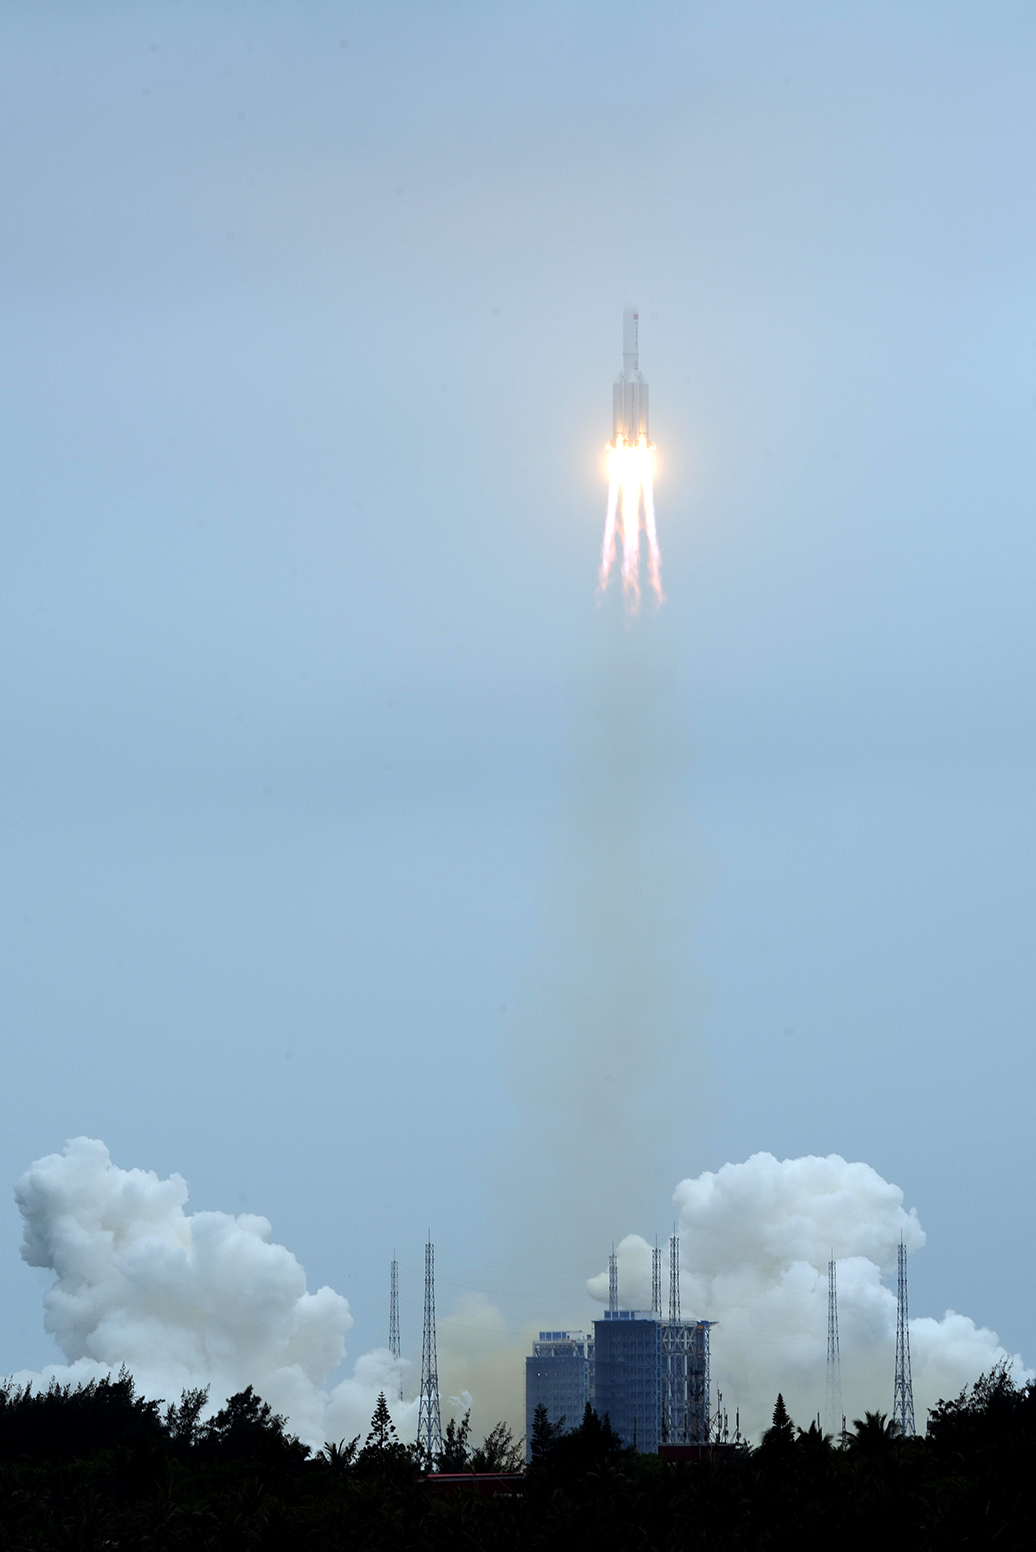 2021年4月29日,火箭搭载着天和核心舱正奔向太空,奔向近地轨道